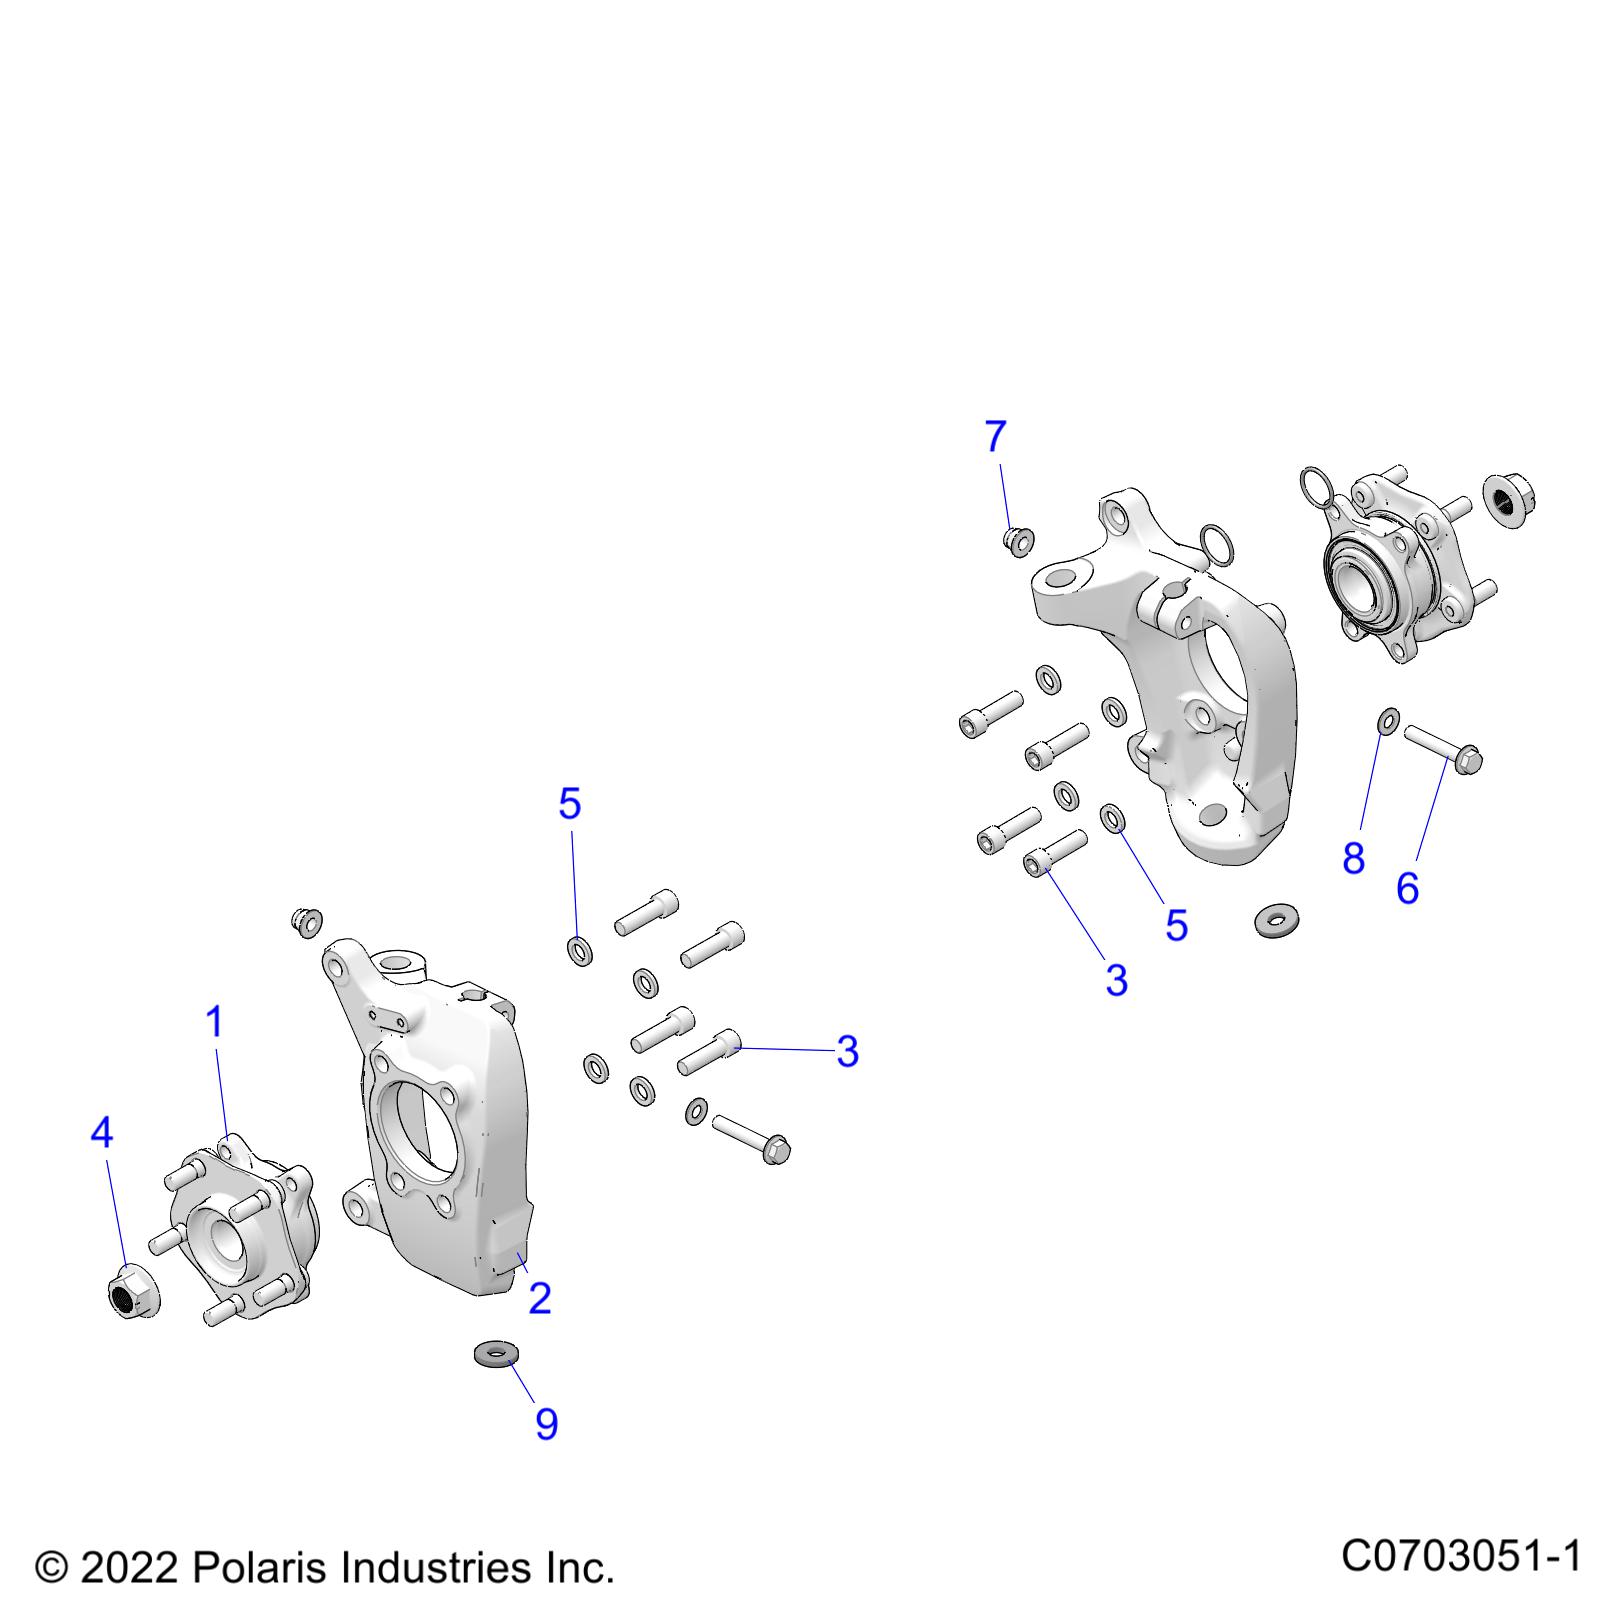 Foto diagrama Polaris que contem a peça 7557202